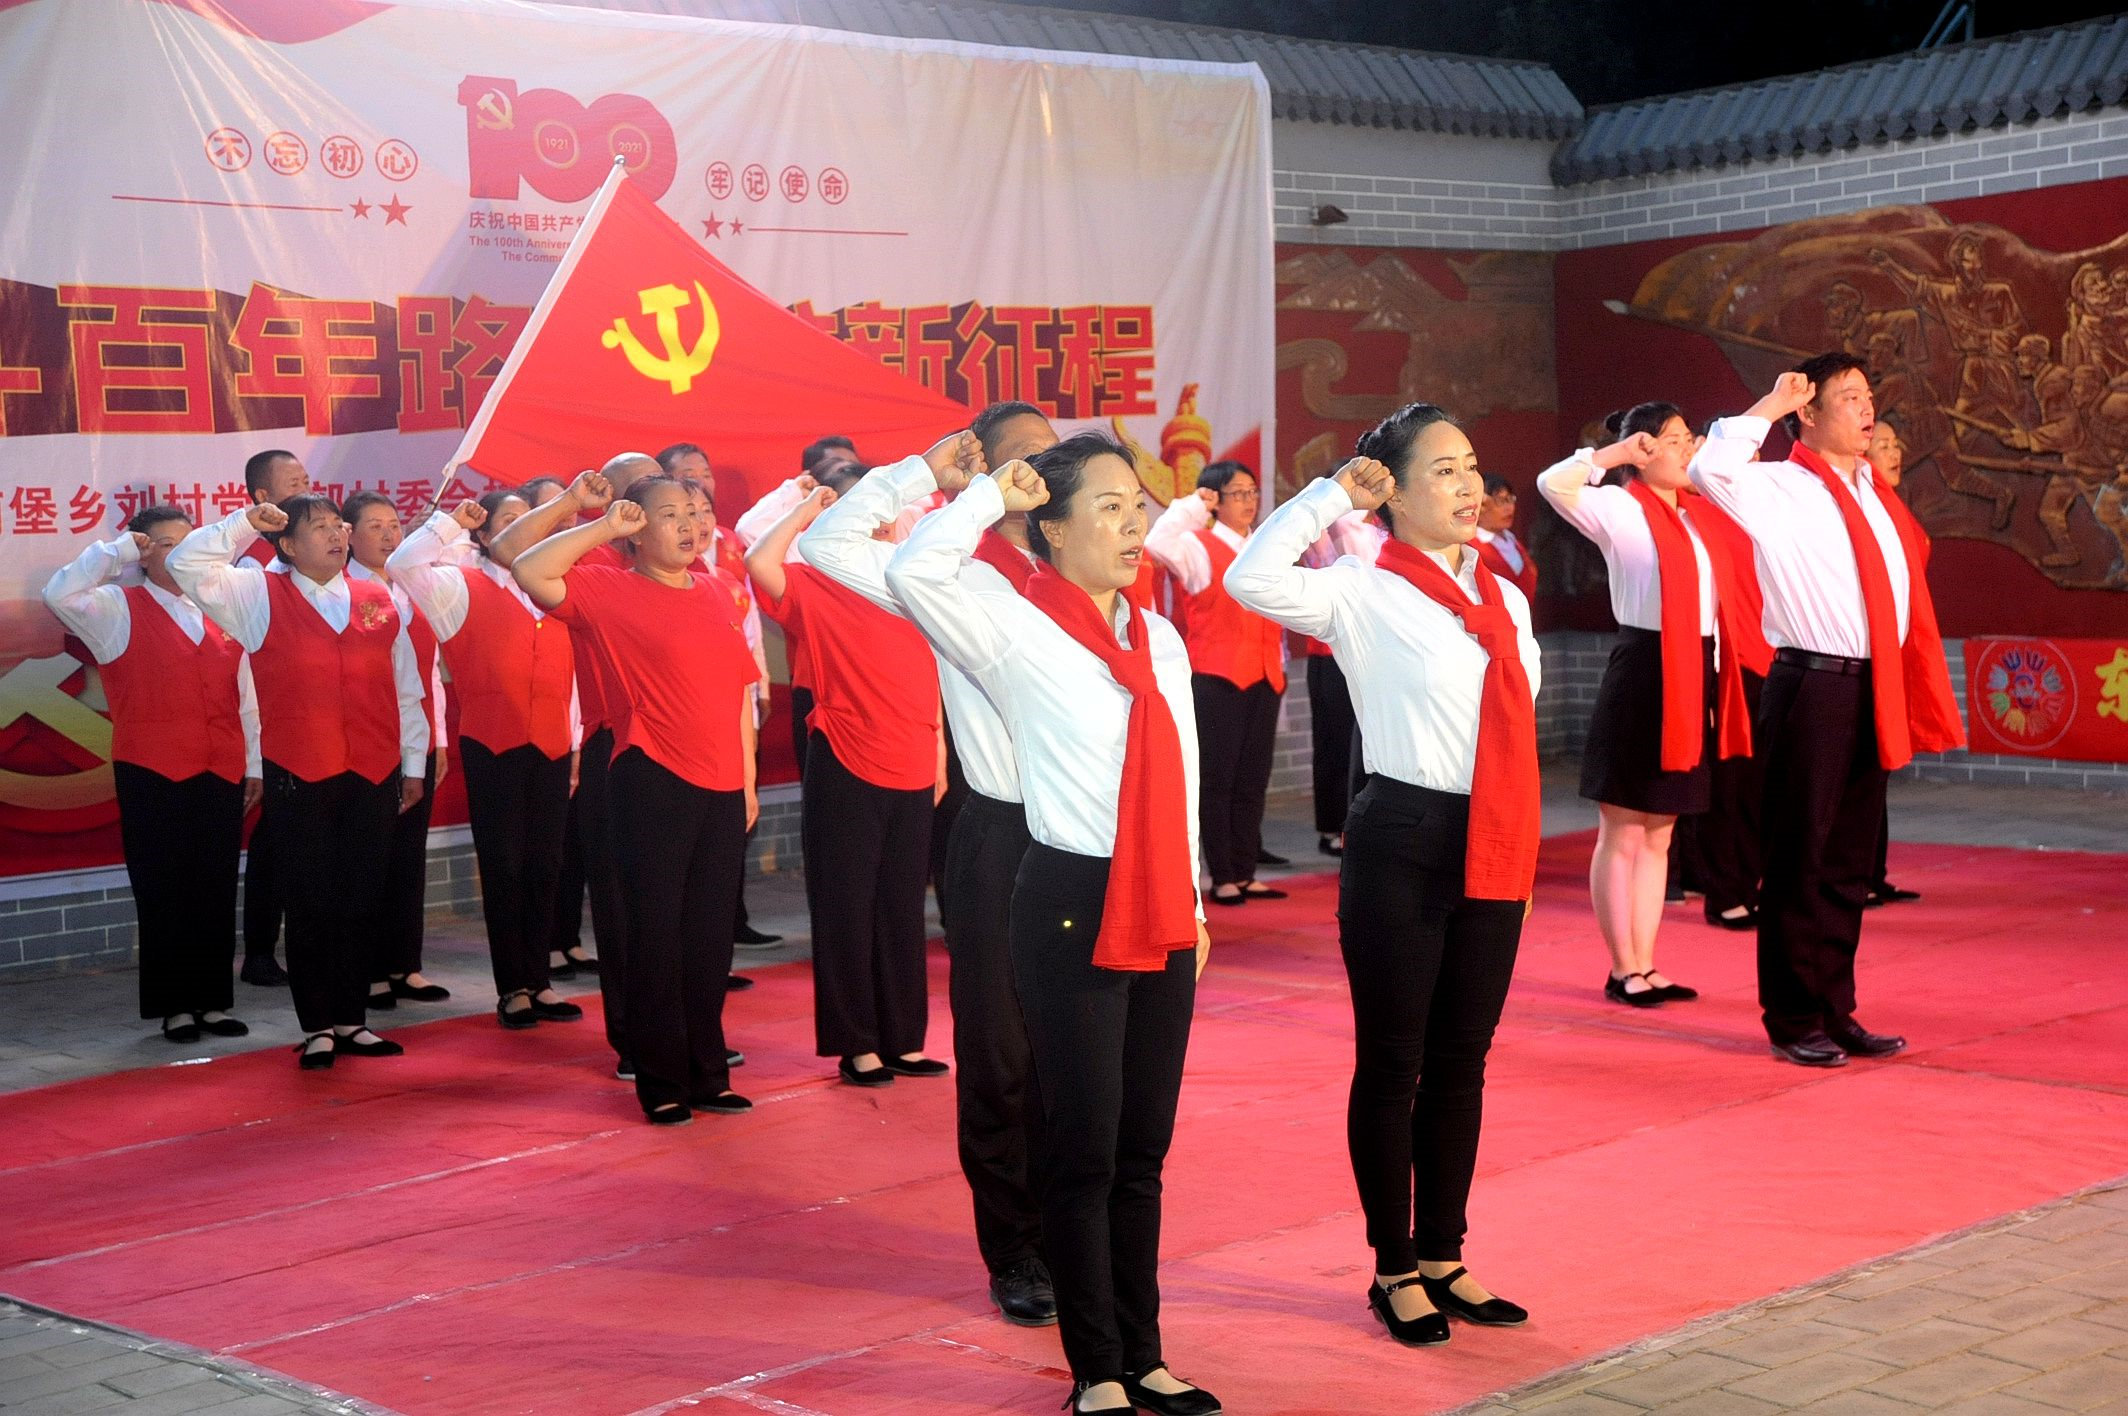 邯郸市邯山区刘村举办庆祝建党百年歌舞晚会